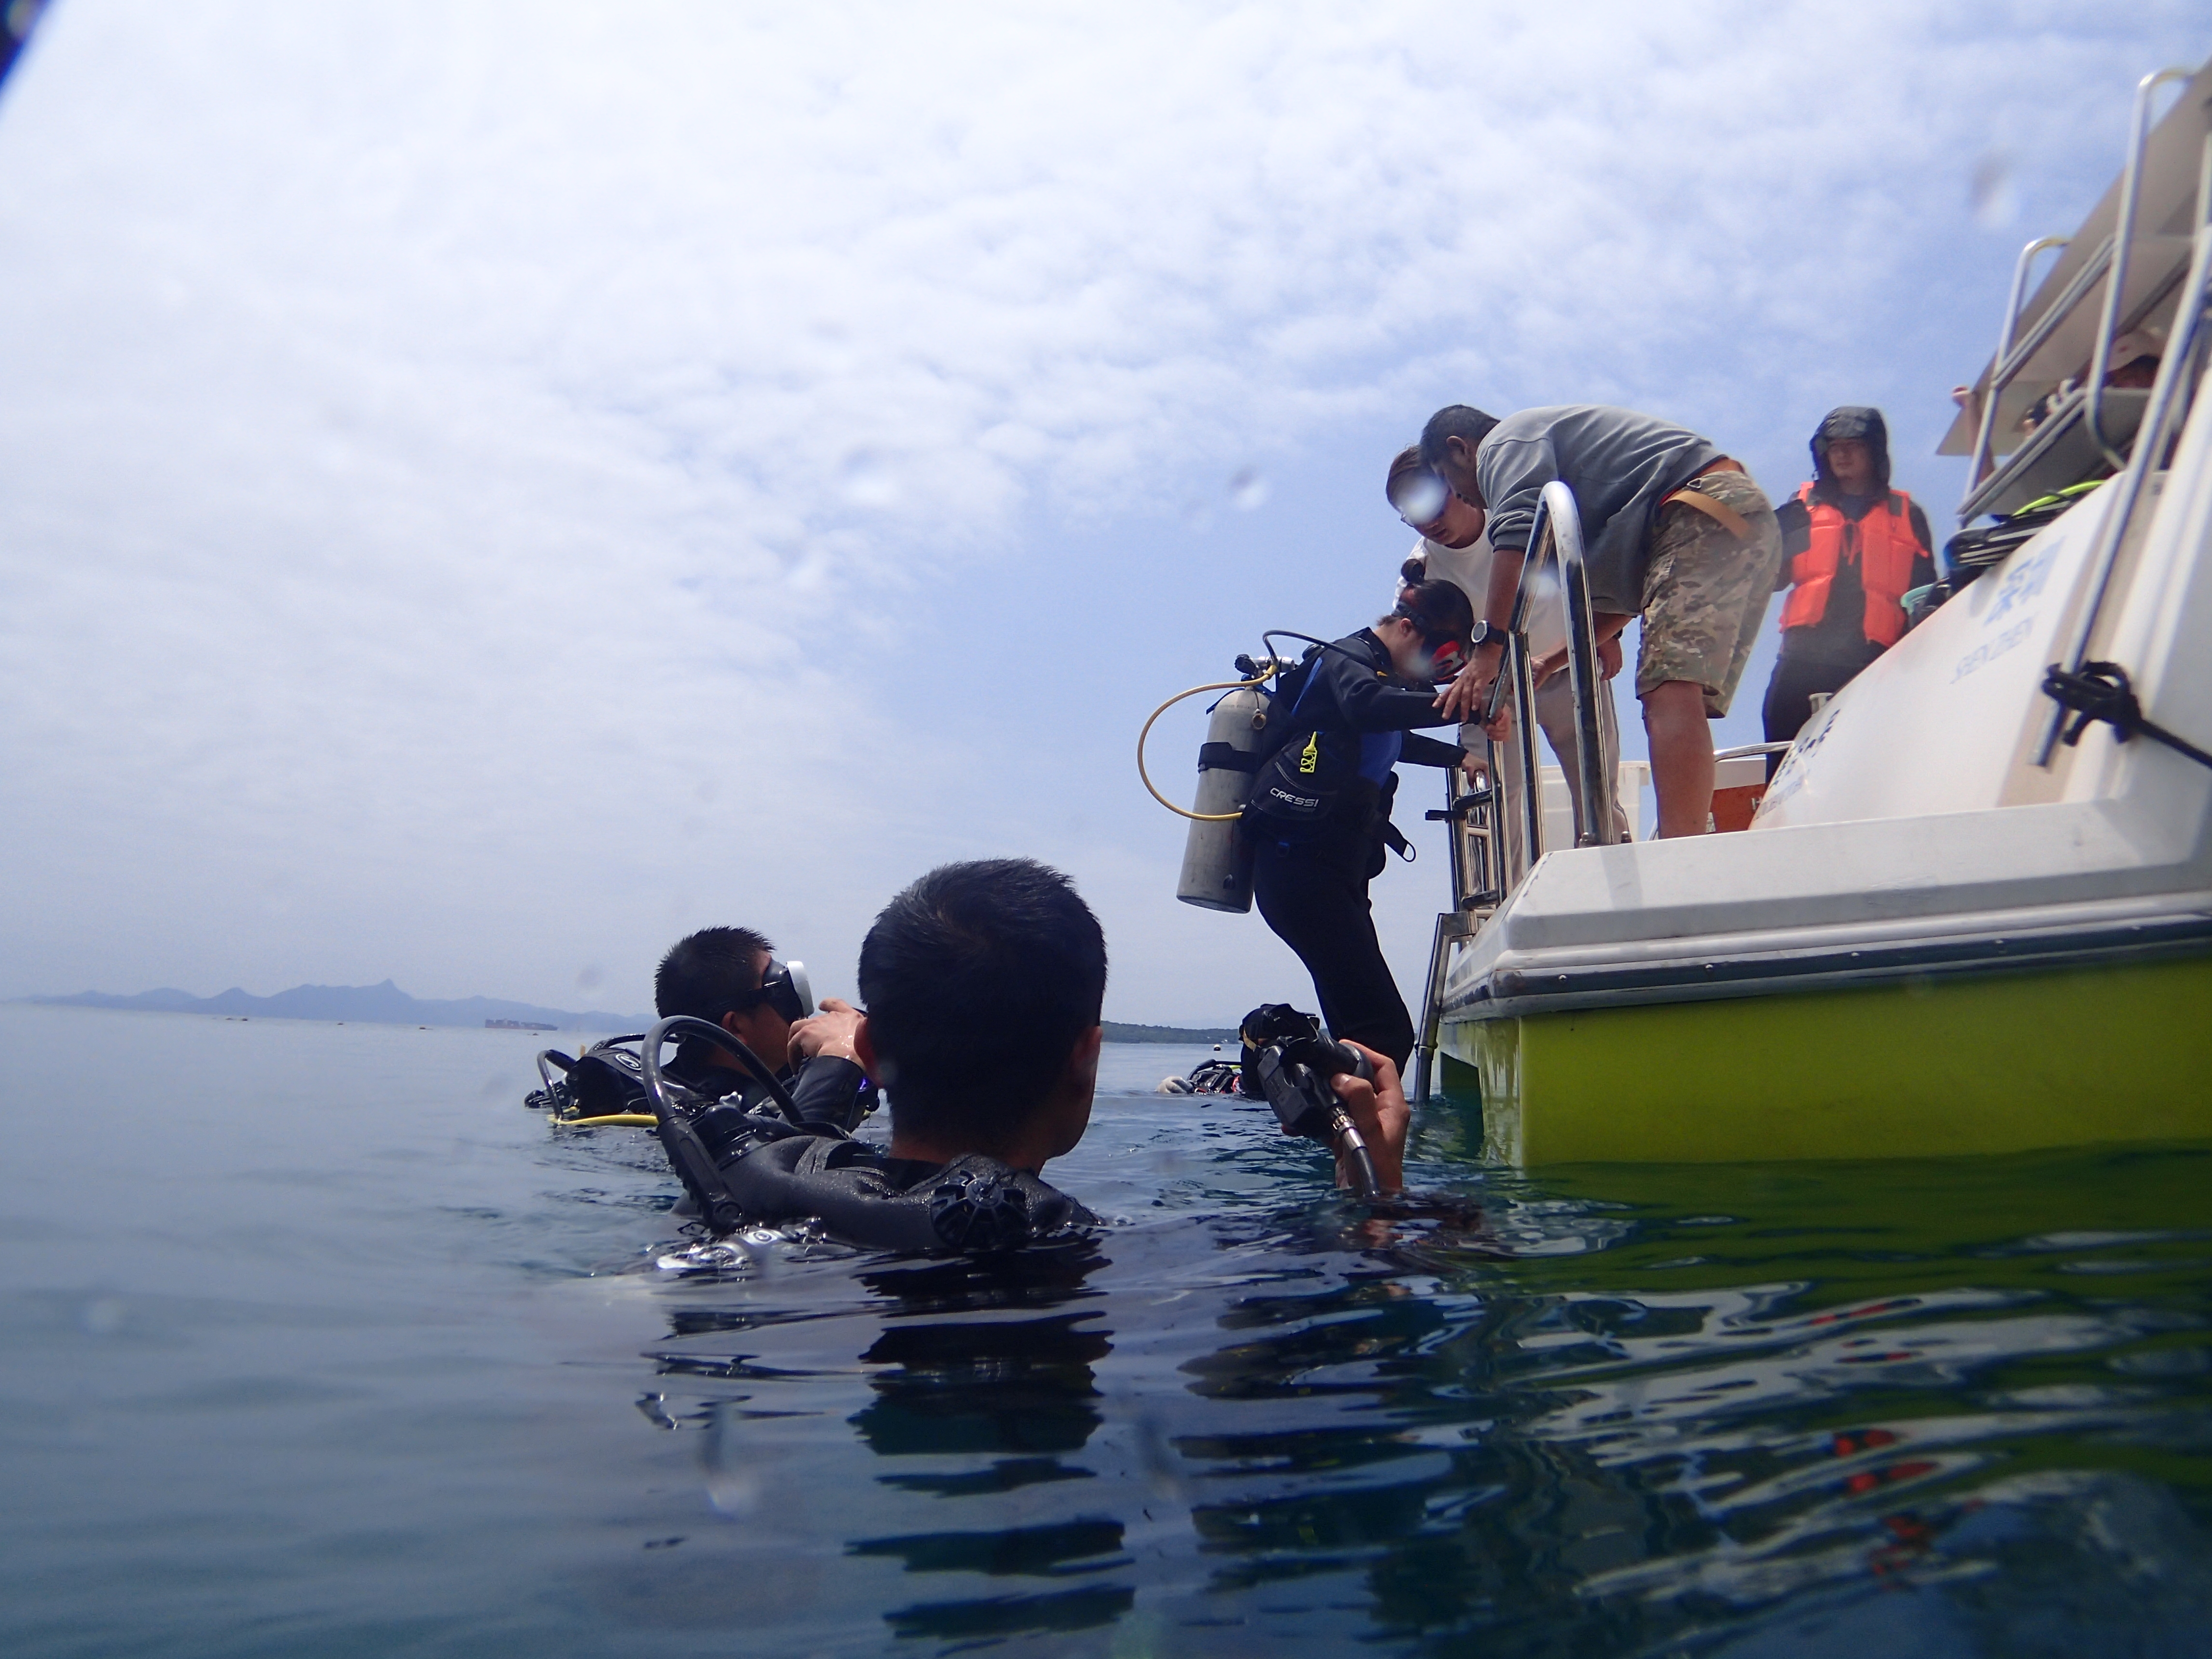 珊瑚认养潜水种植 深圳渔博会助力大鹏国家级海洋牧场建设